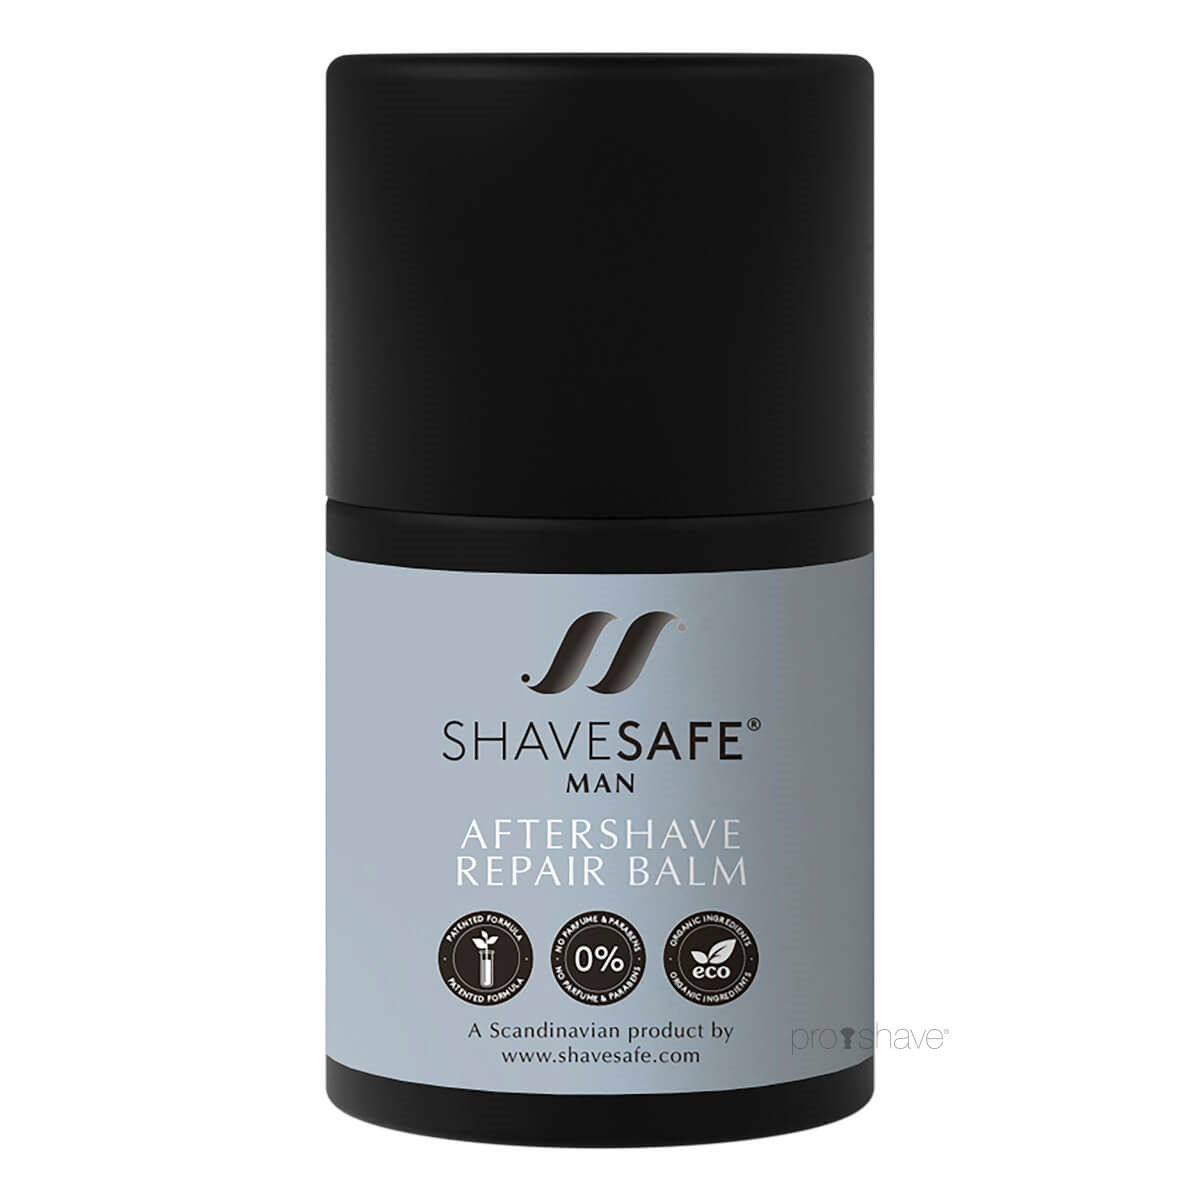 Billede af ShaveSafe Aftershave Repair Balm, Man, 50 ml. hos Proshave